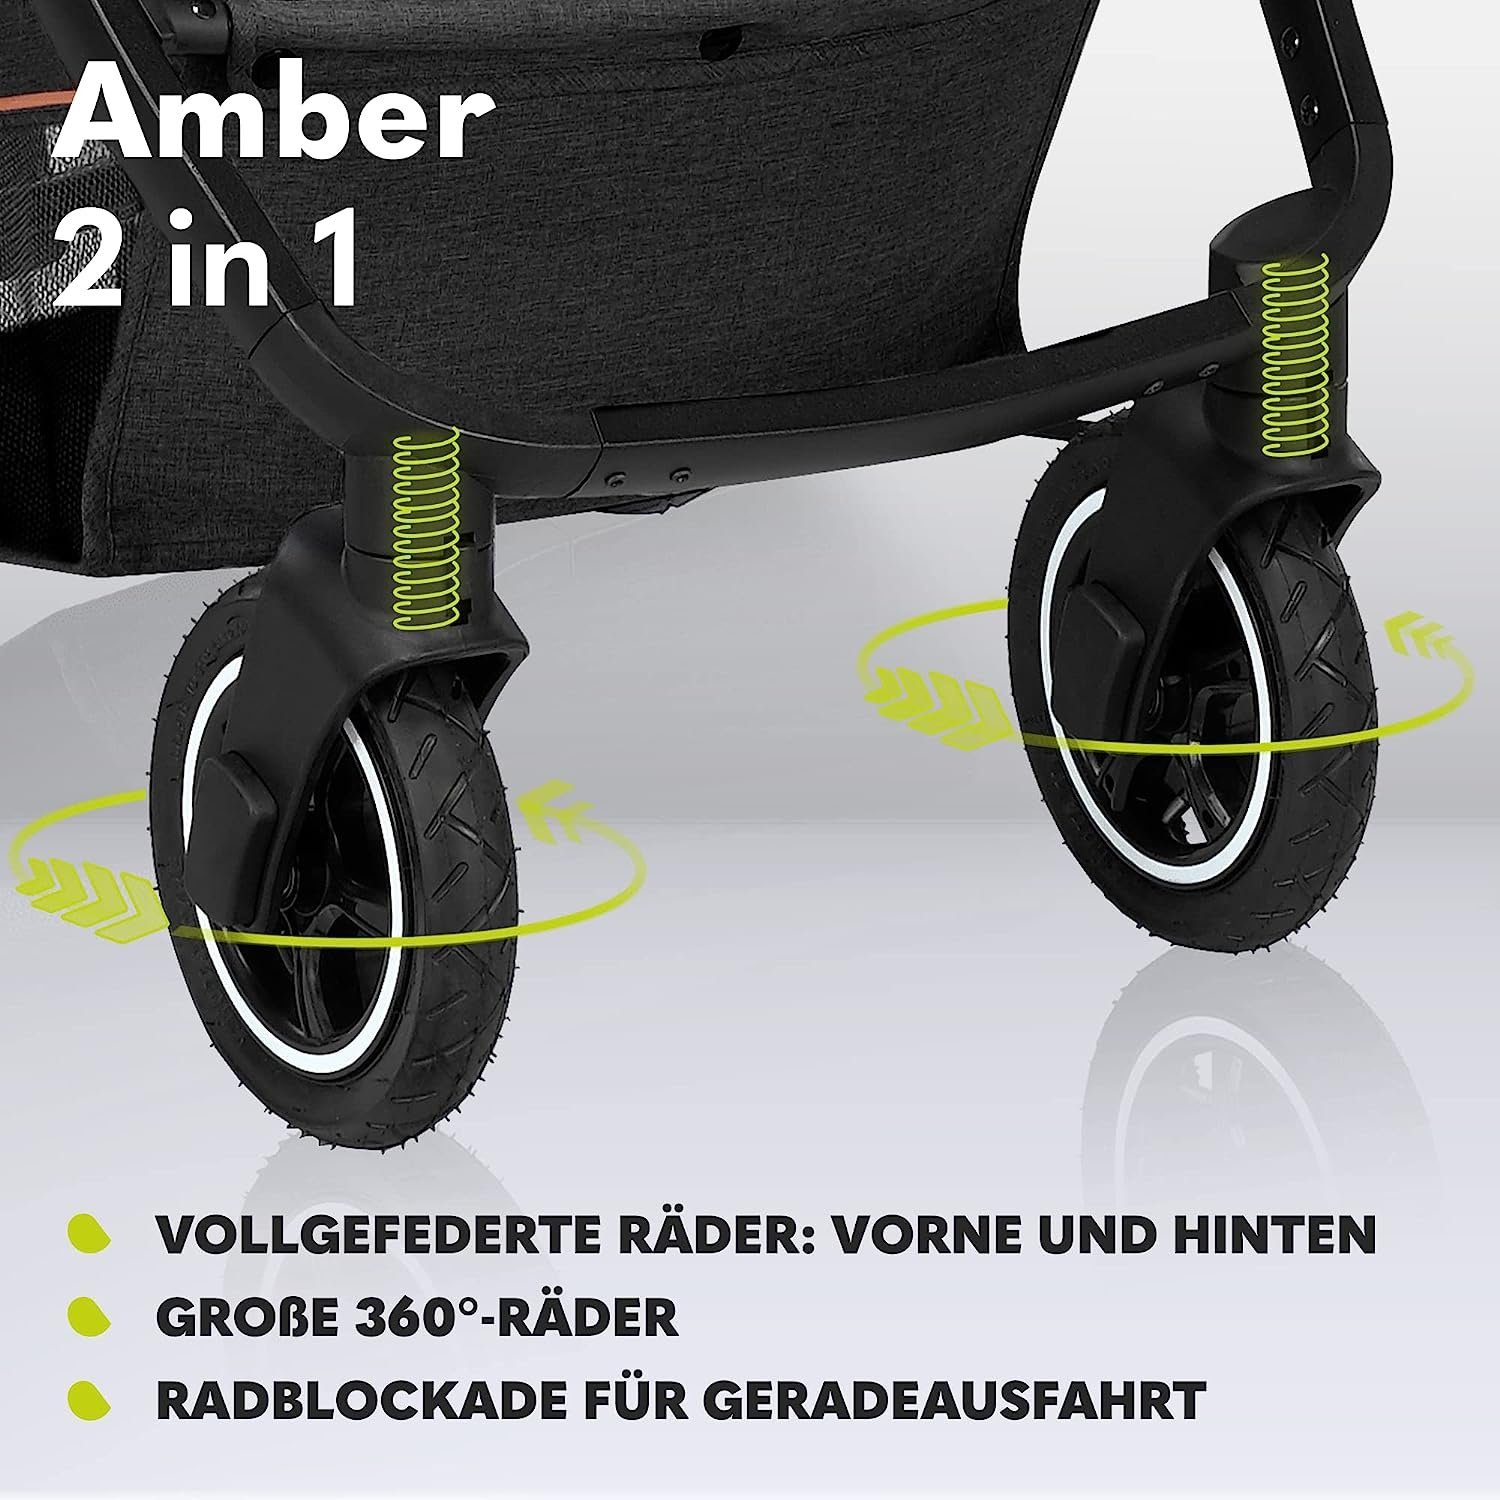 lionelo Kombi-Kinderwagen Moskitonetz 2in1 Amber, Regenschutz Tasche Schutzüberzug Dunkelgrau